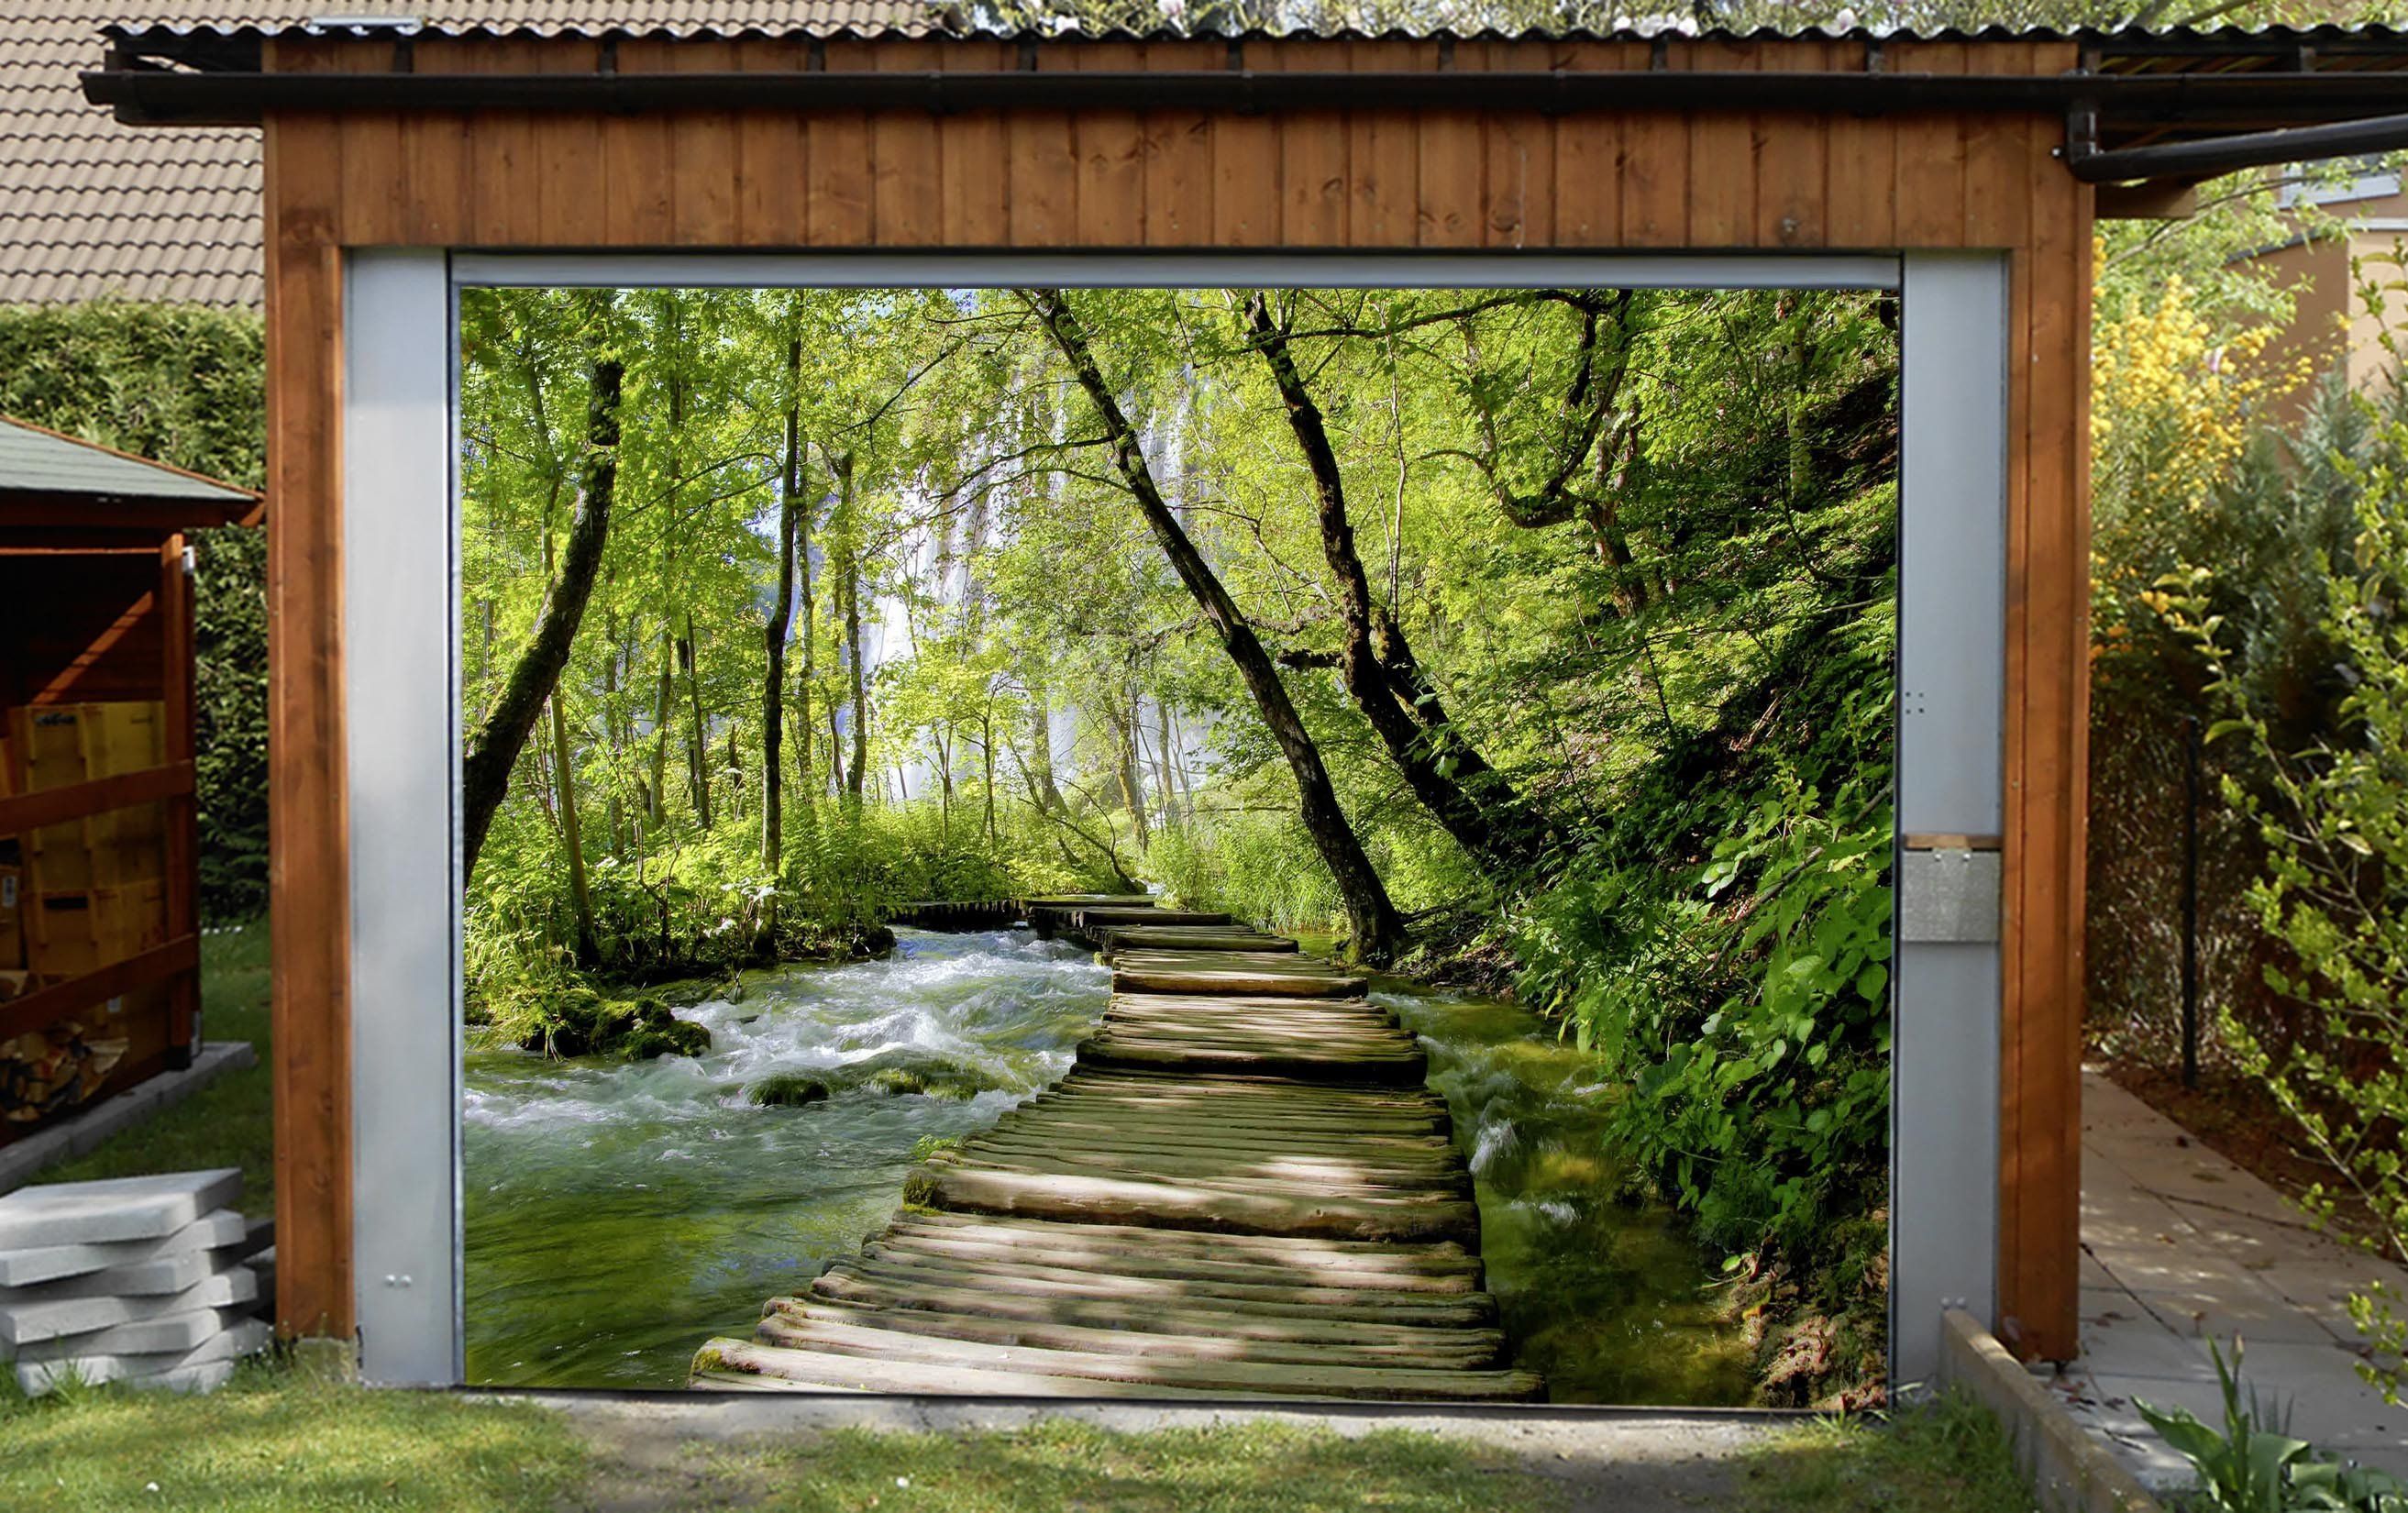 3D Forest River Wood Bridge 332 Garage Door Mural Wallpaper AJ Wallpaper 